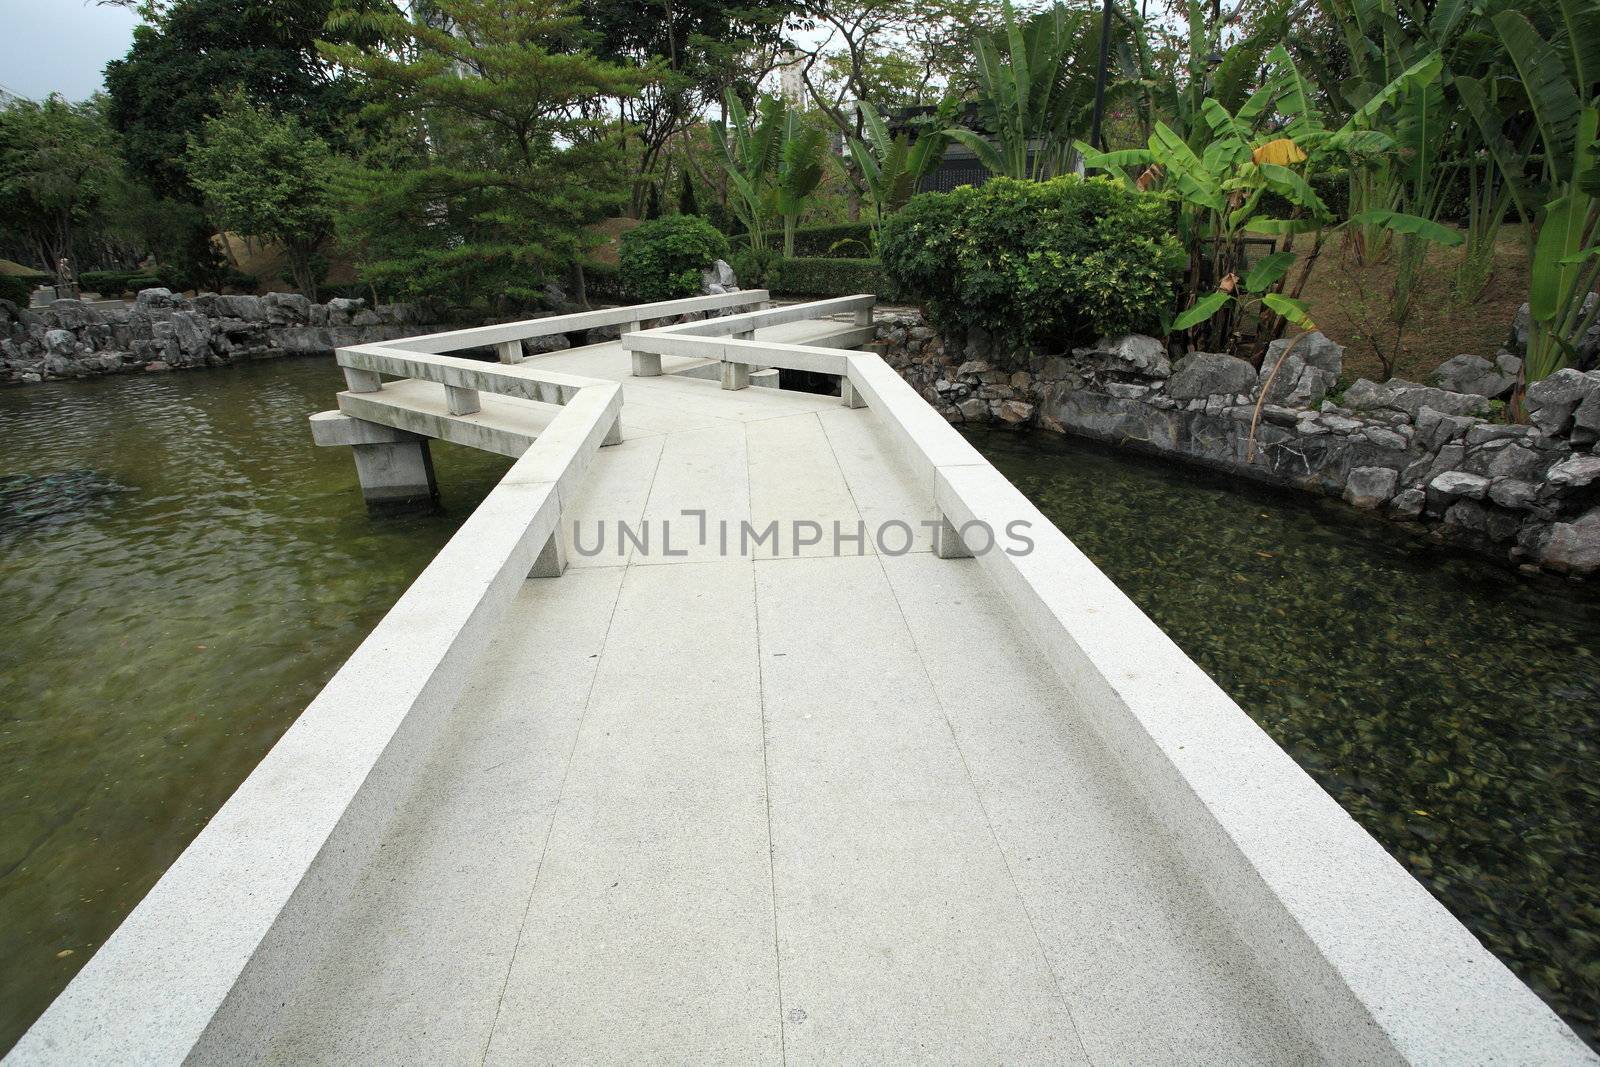 bridge in chinese garden